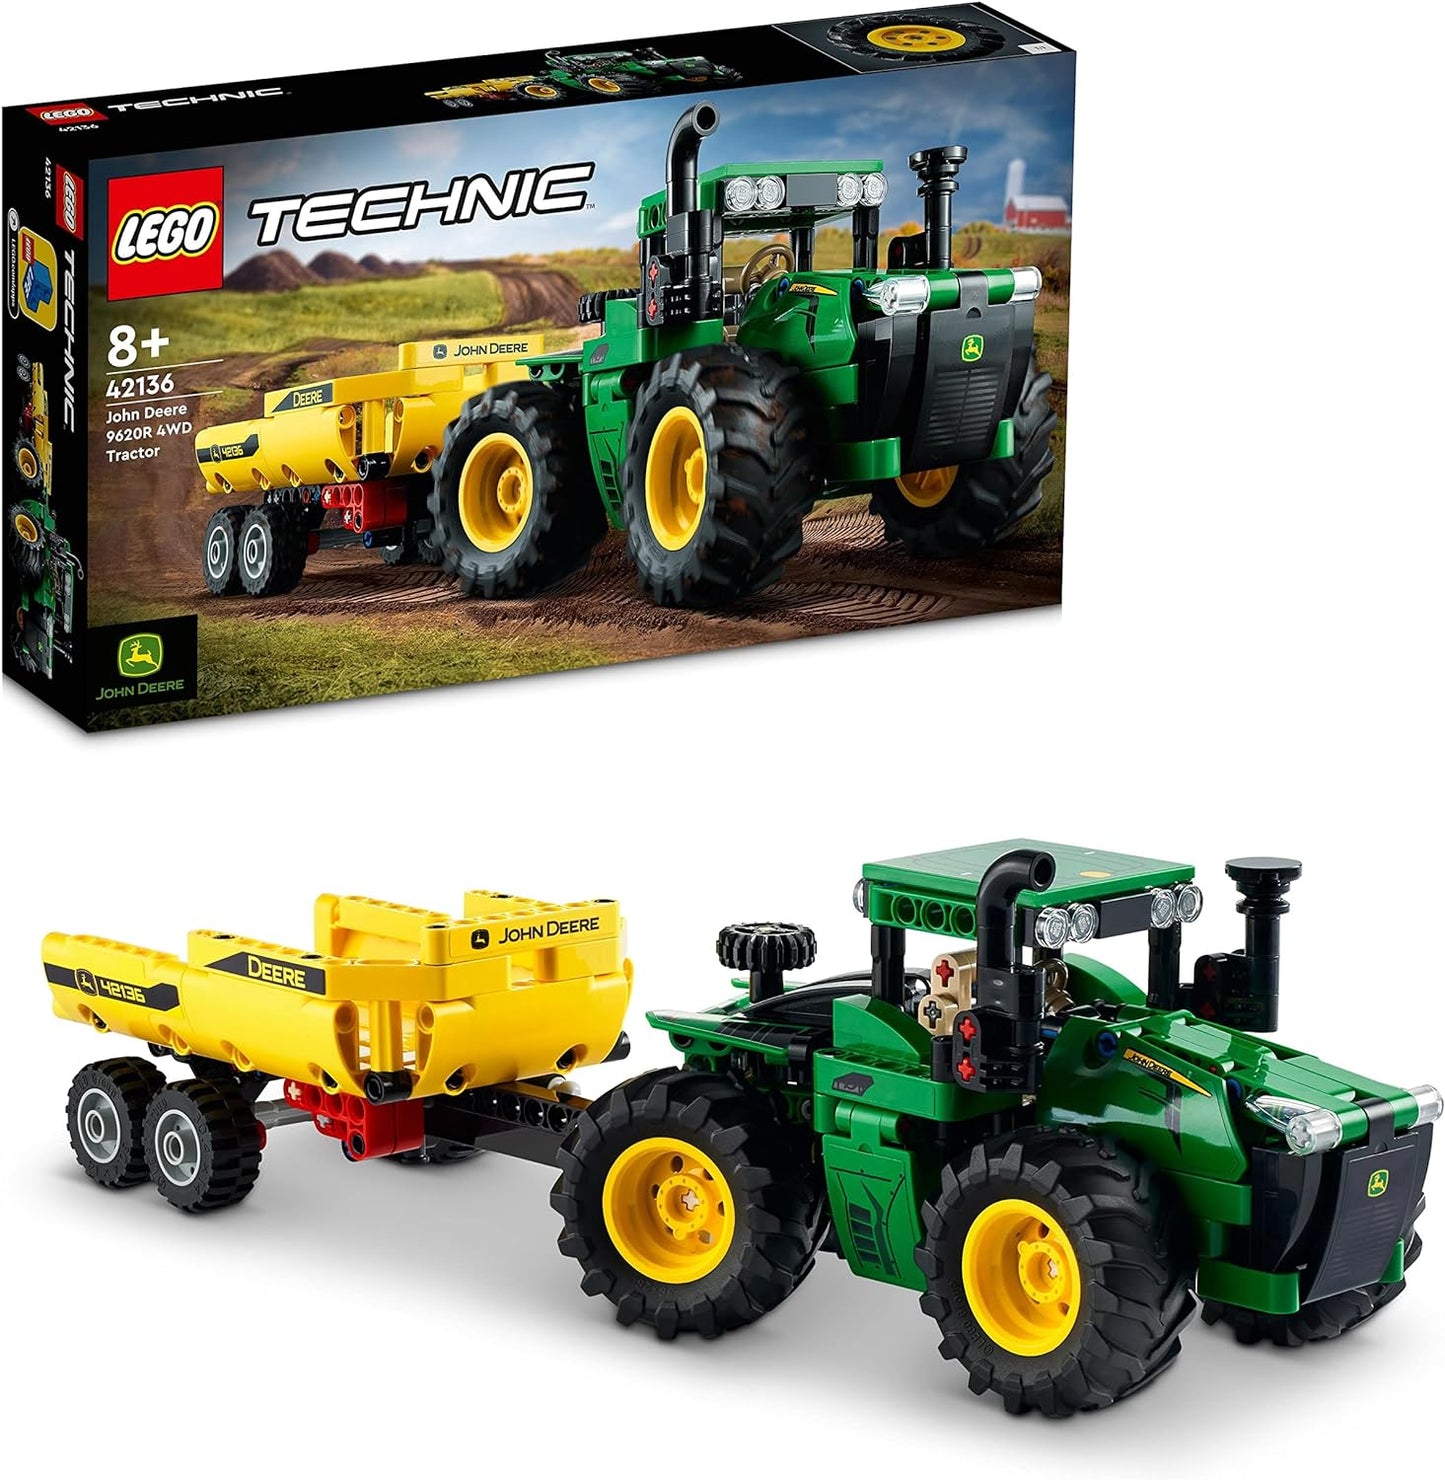 LEGO Conjunto de construção de brinquedo, veículo e transportador para carro de corrida urbano e caminhão transportador de carro para meninos e meninas de 6 anos ou mais com rampa de carregamento ajustável, minifiguras de piloto e motorista, presente